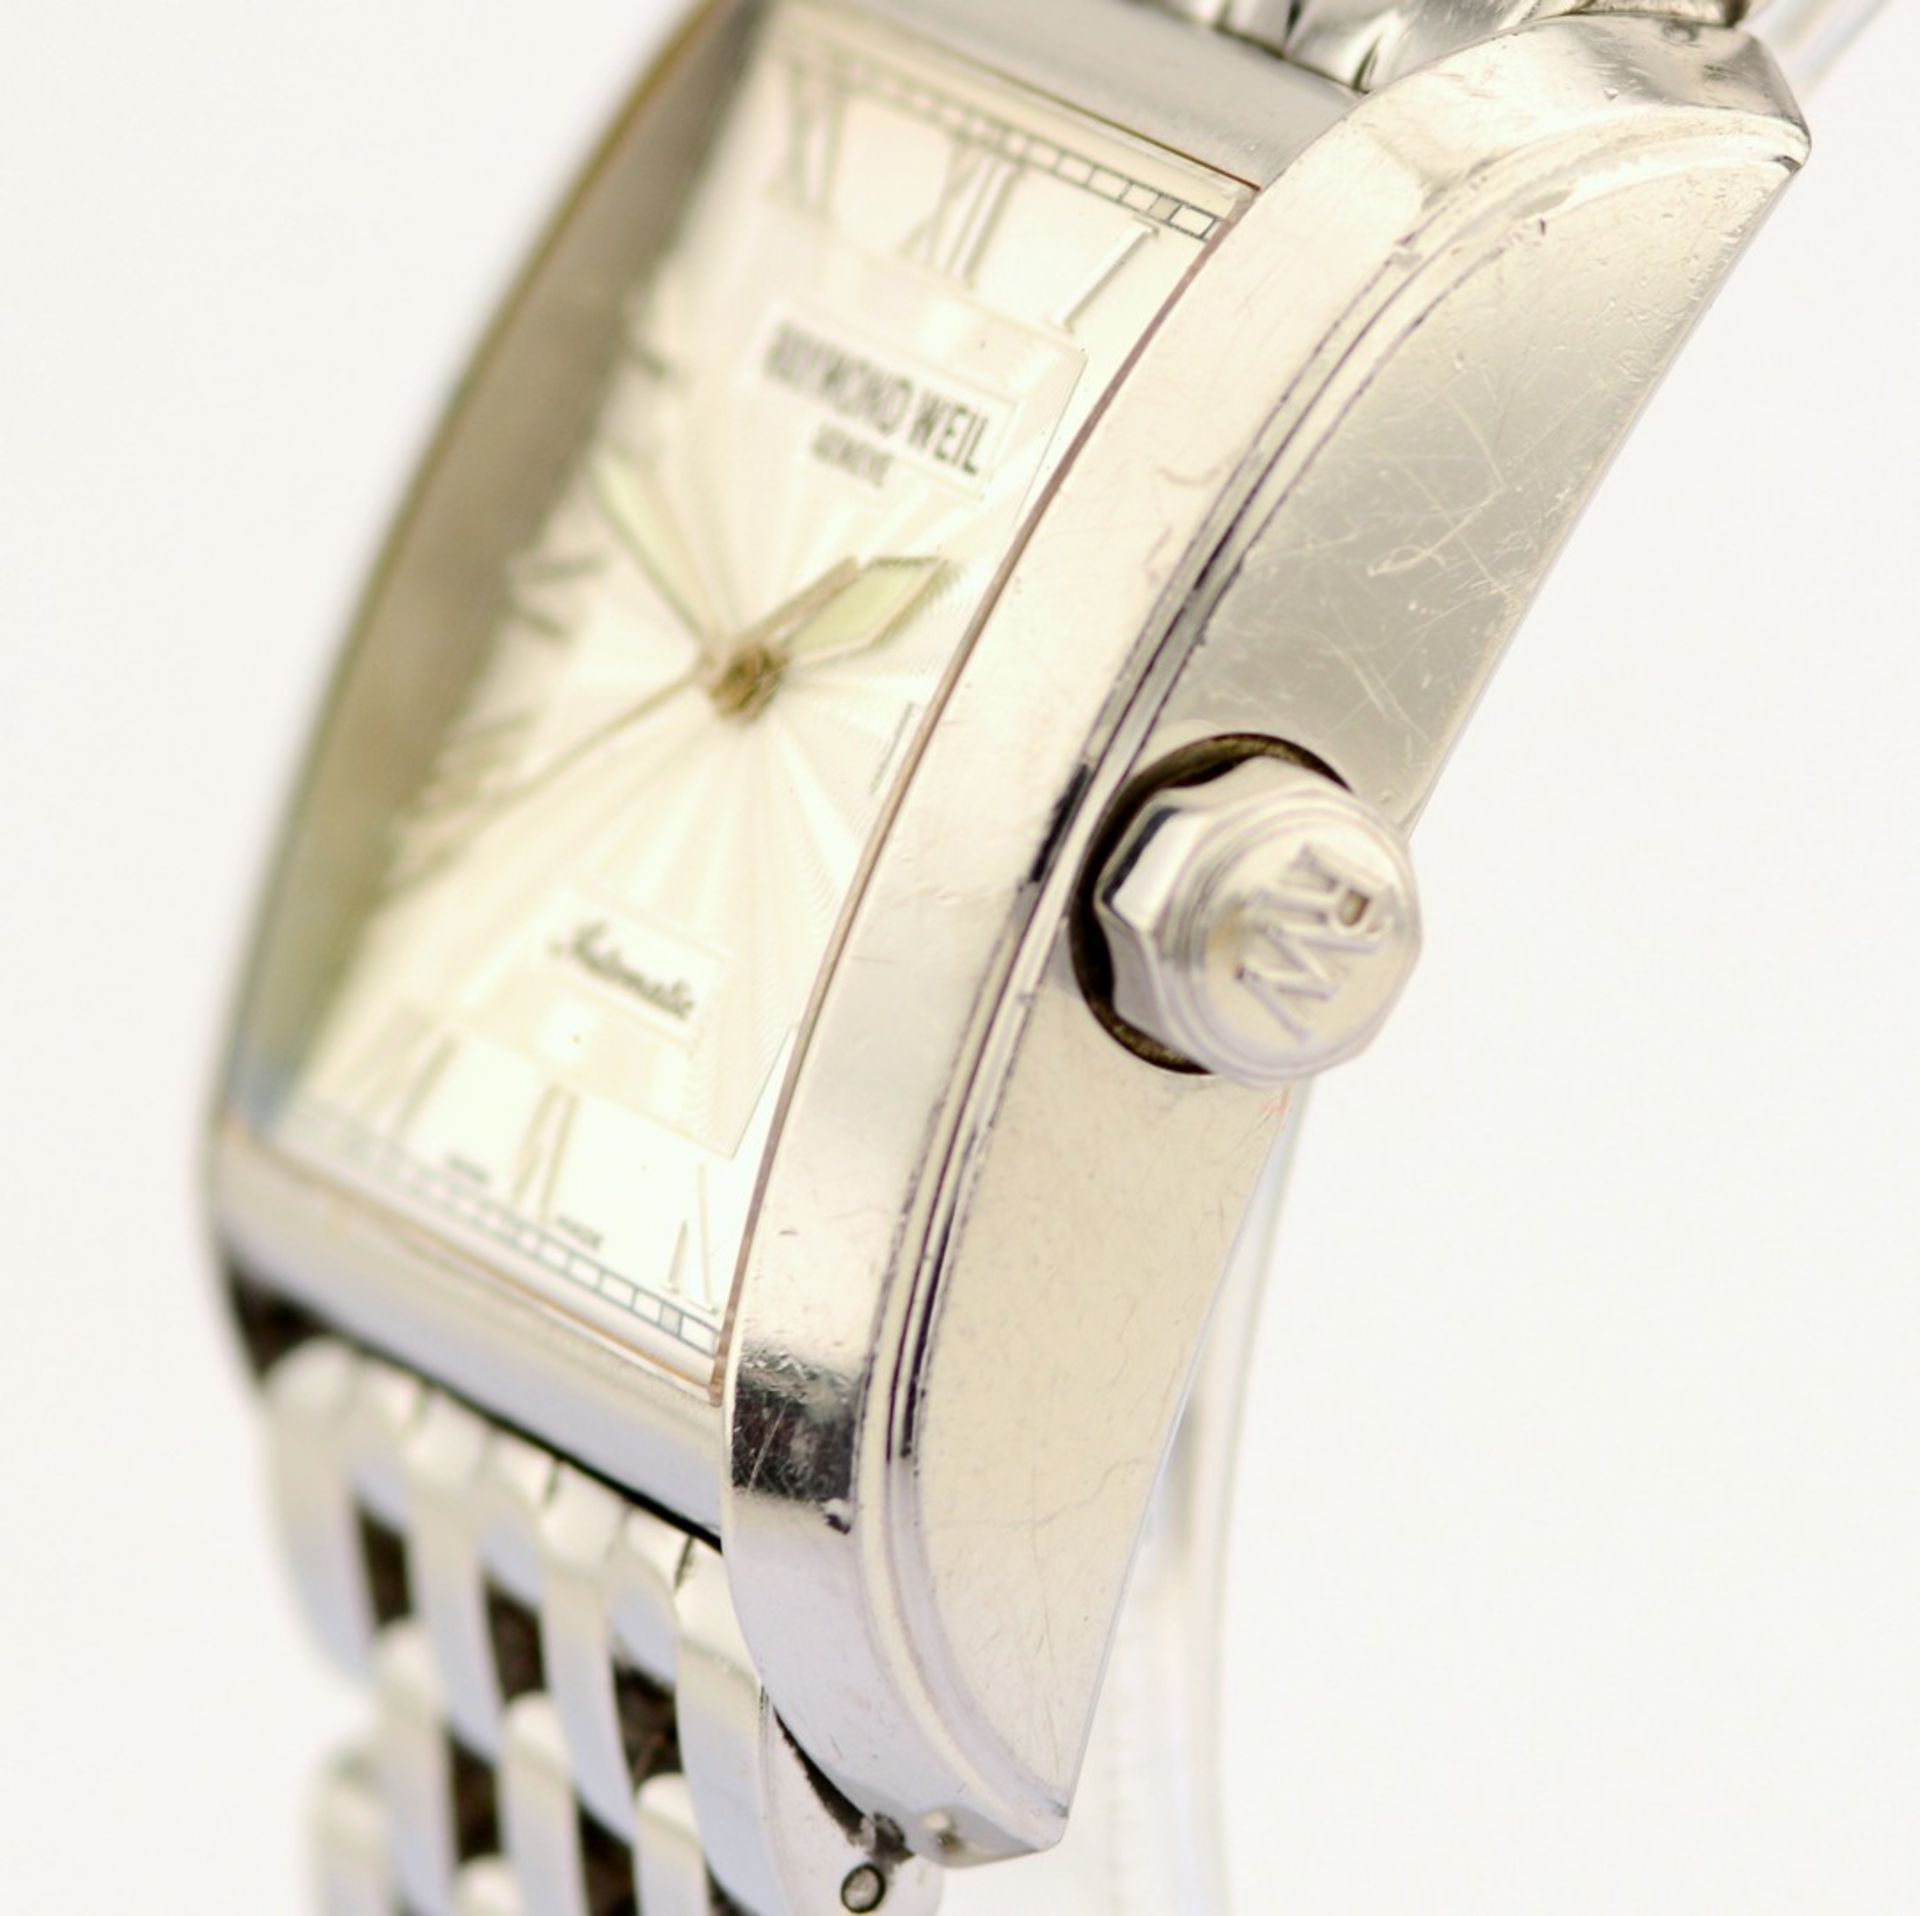 Raymond Weil / Don Giovanni 2671 - Gentlemen's Steel Wristwatch - Image 6 of 8